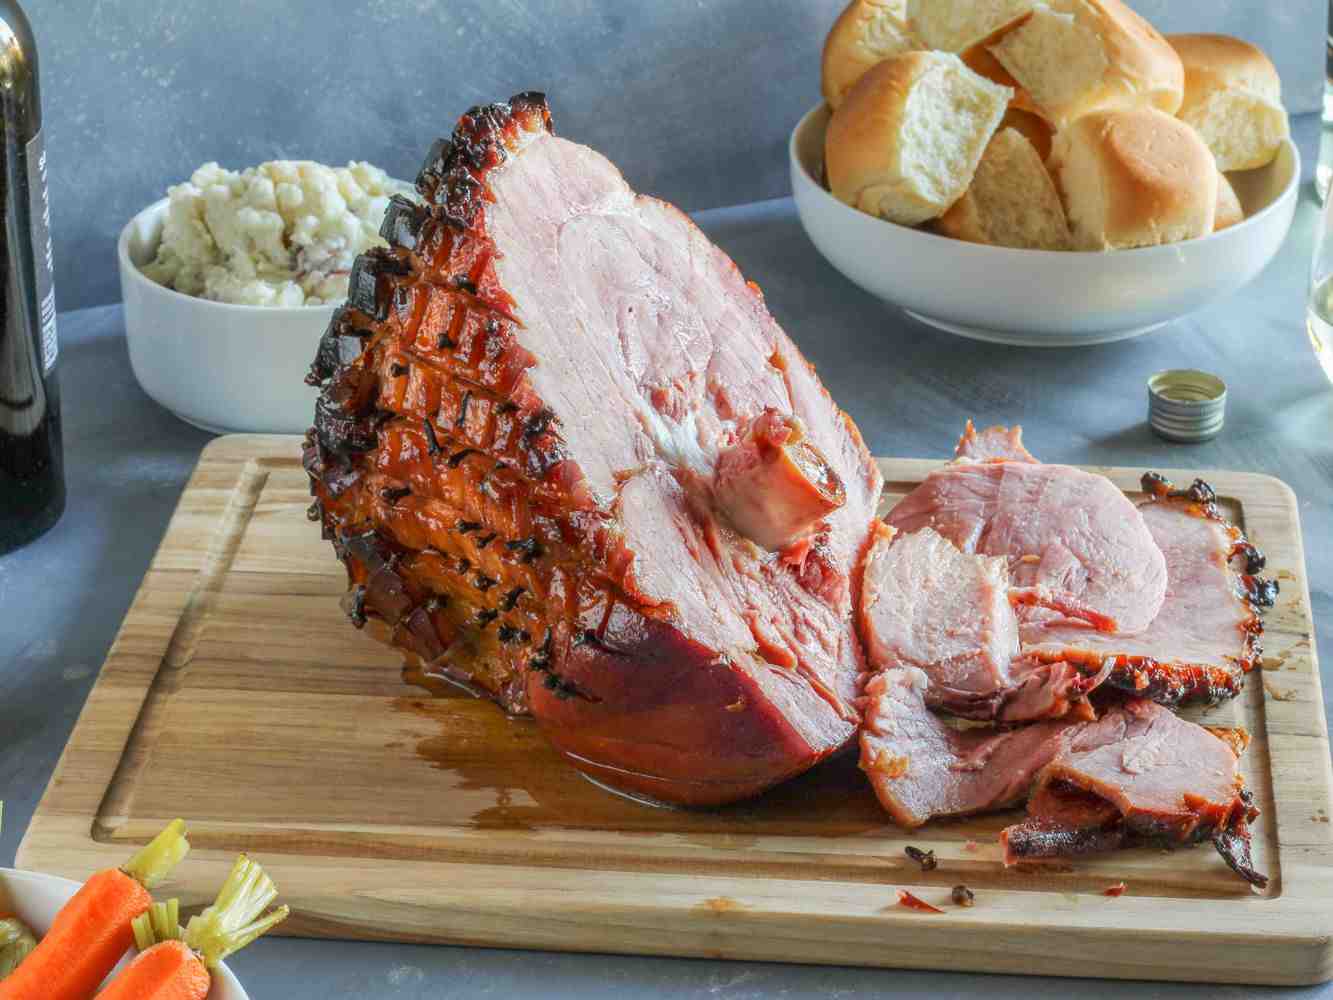 What makes pork a ham?